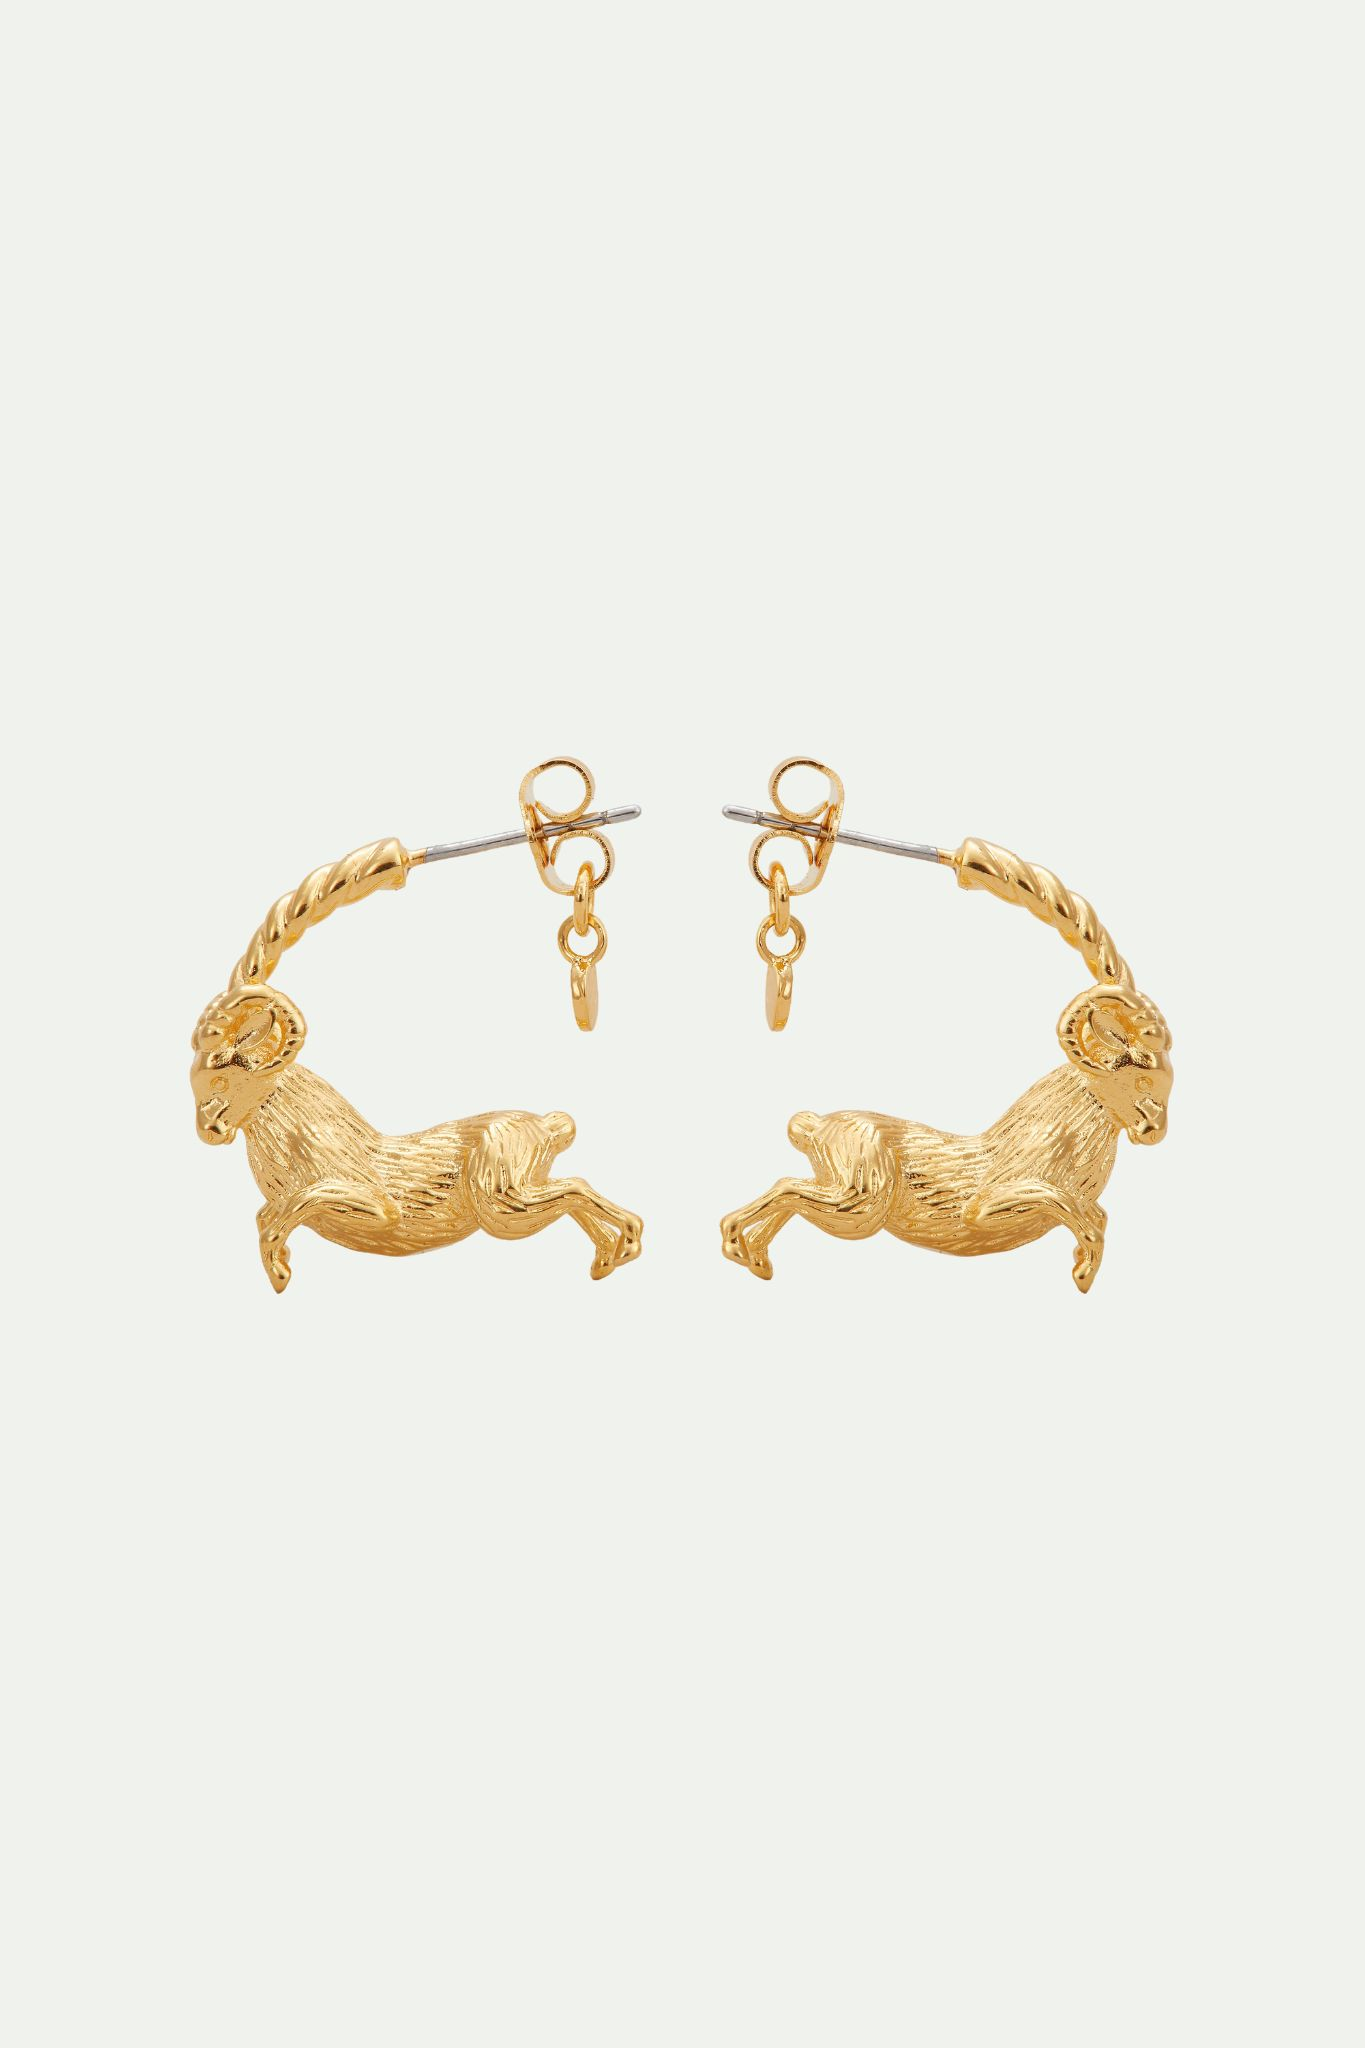 Aries zodiac sign hoops earrings